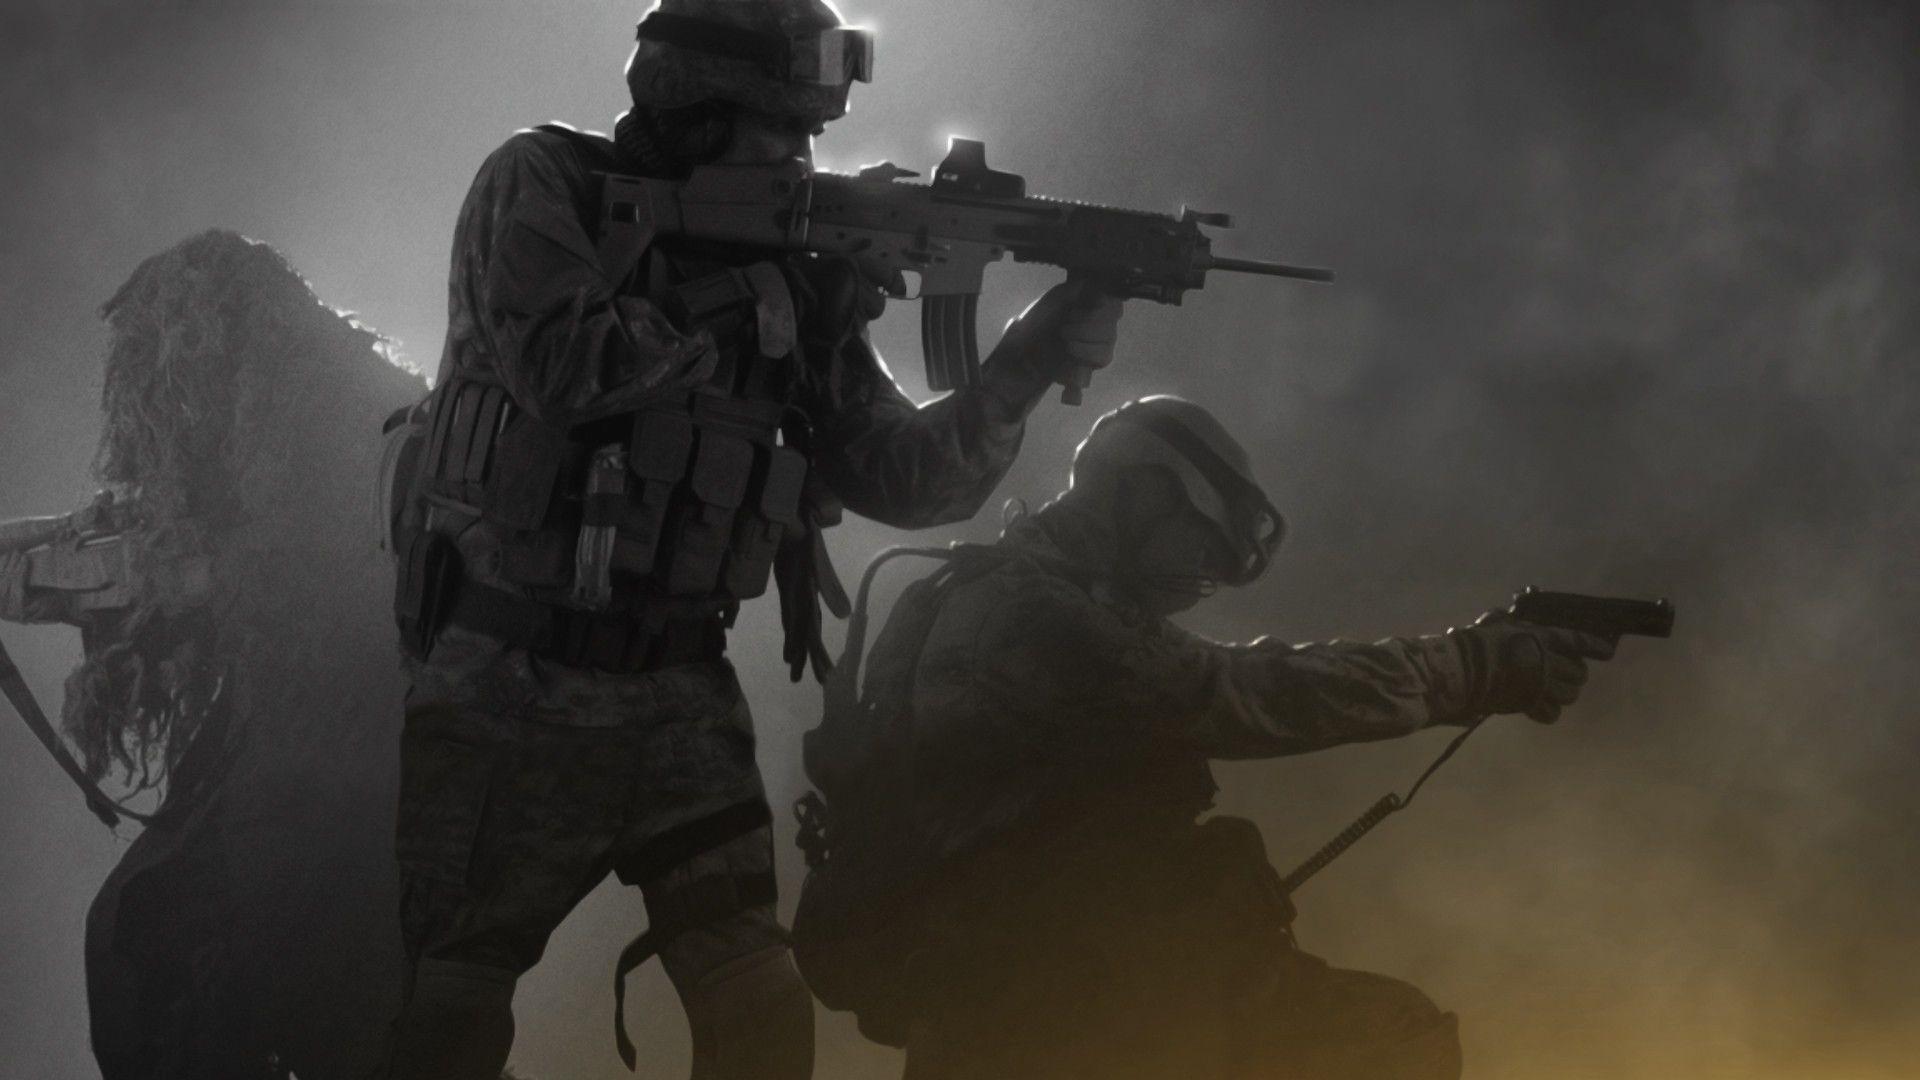 Modern Warfare 2 Wallpaper 1080p (the best image in 2018)